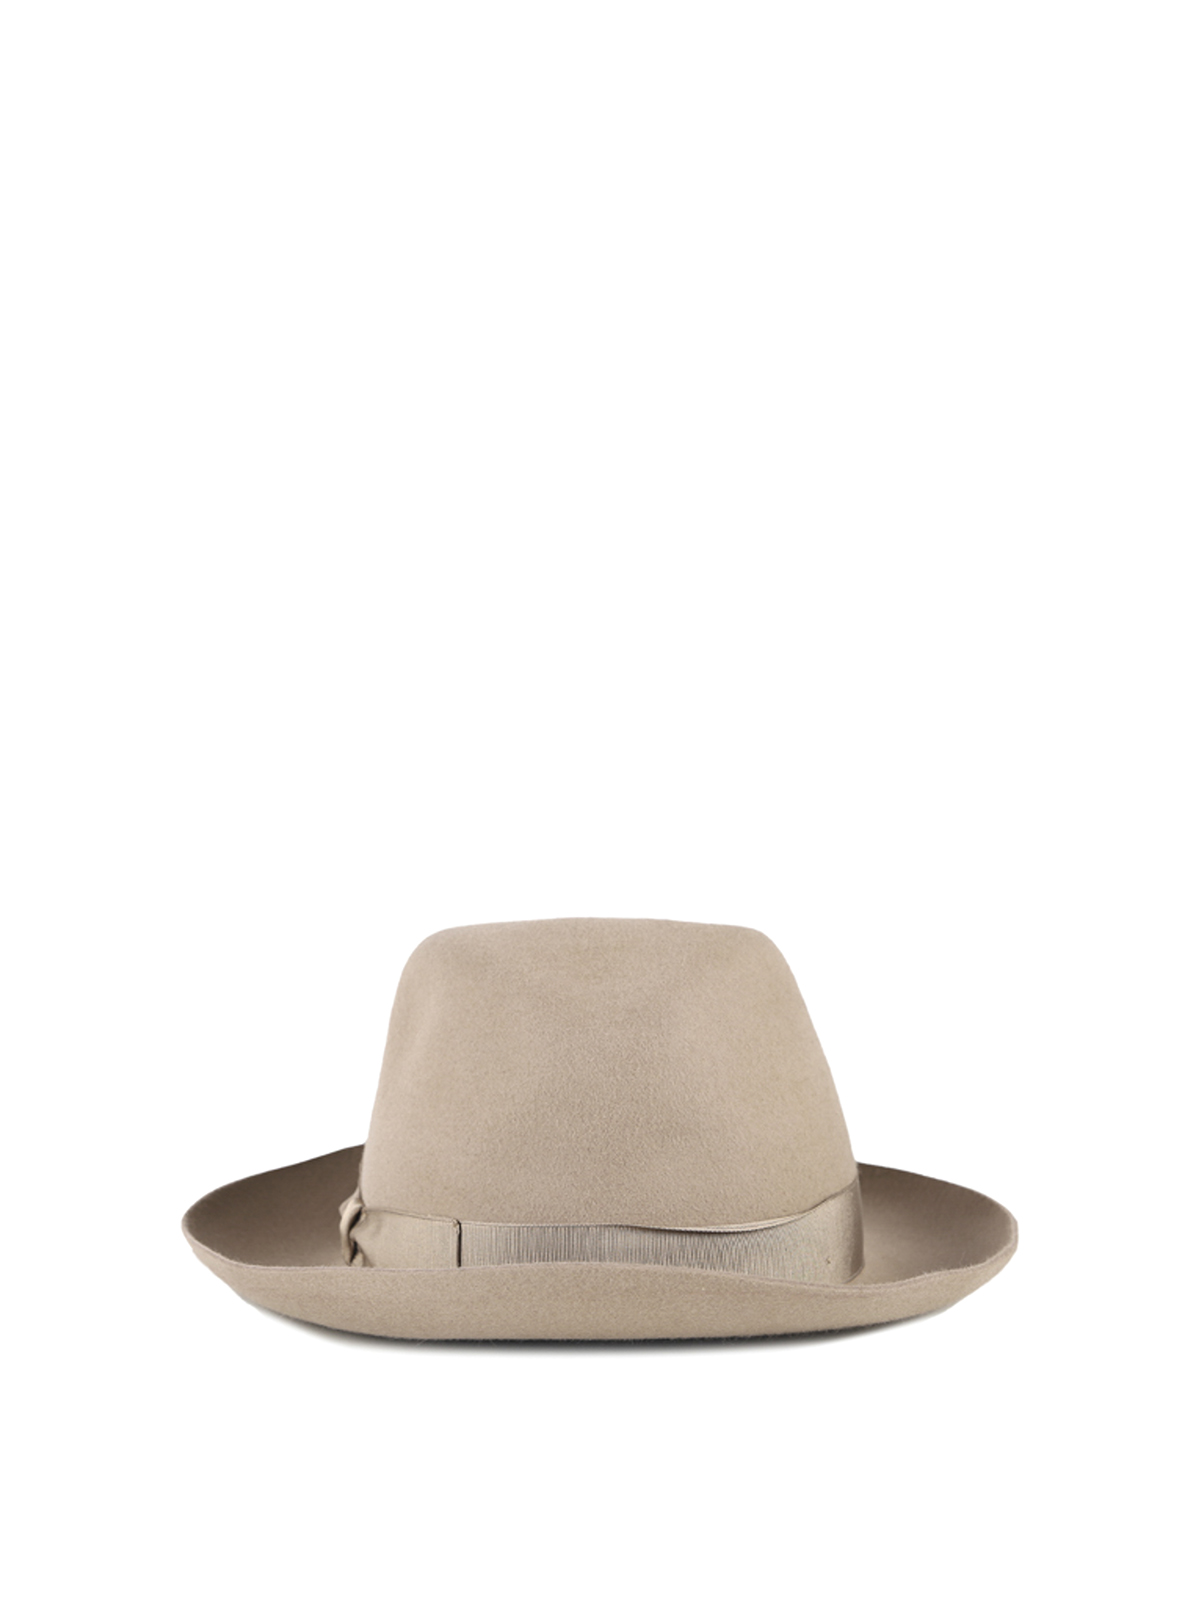 IJver haalbaar betrouwbaarheid Hats & caps Borsalino - Felt hat - 2130245011 | Shop online at iKRIX